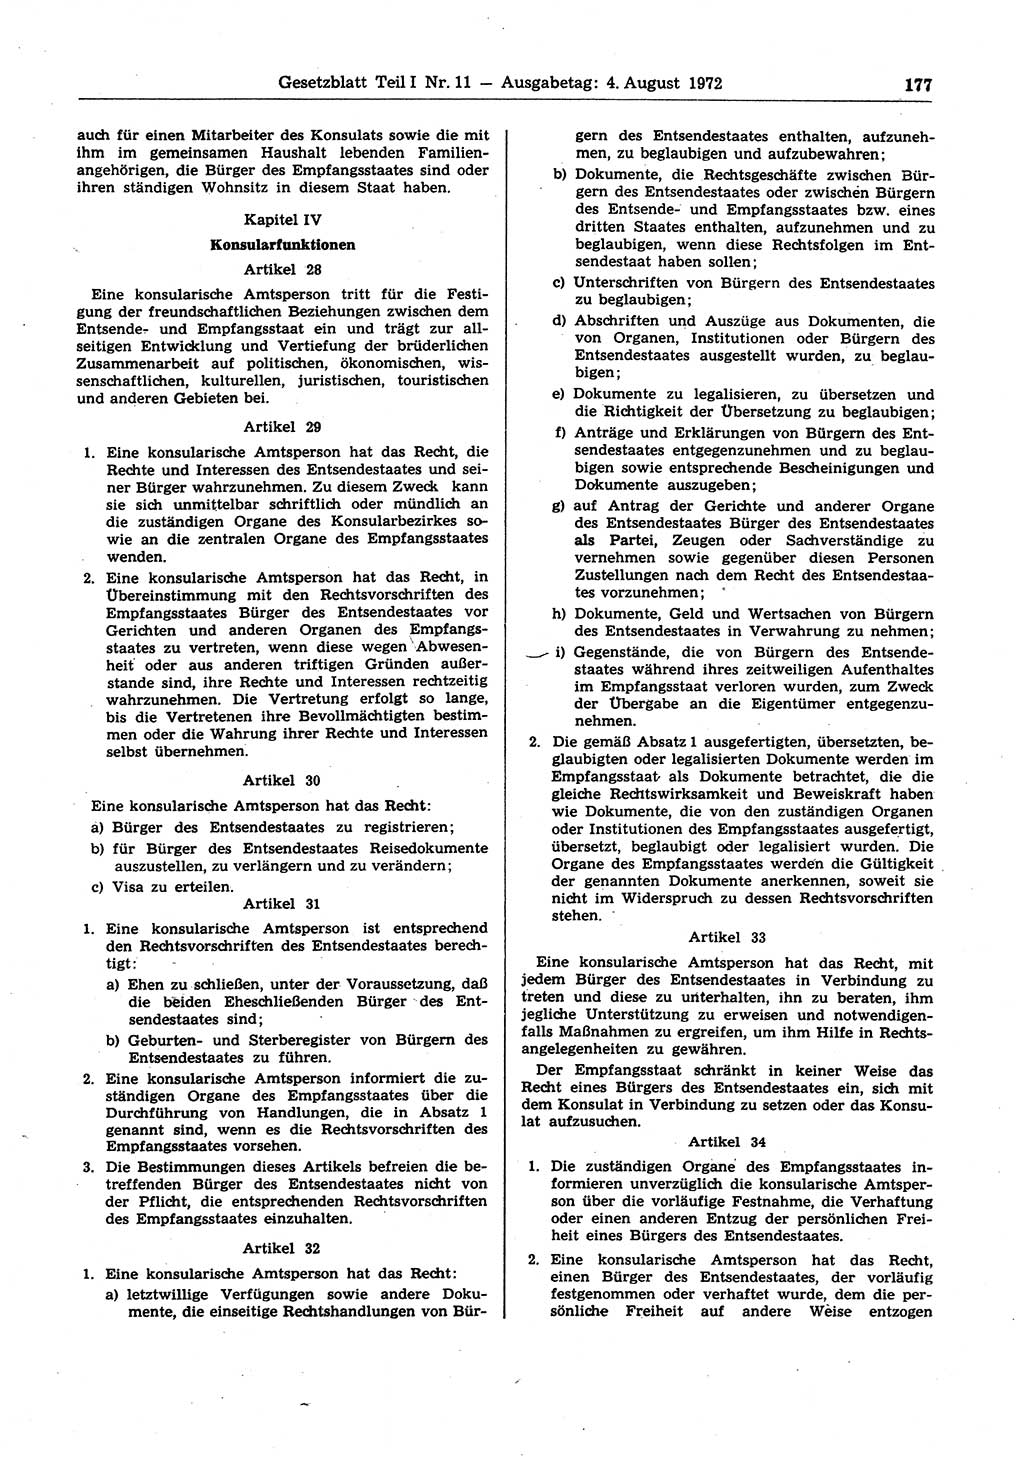 Gesetzblatt (GBl.) der Deutschen Demokratischen Republik (DDR) Teil Ⅰ 1972, Seite 177 (GBl. DDR Ⅰ 1972, S. 177)